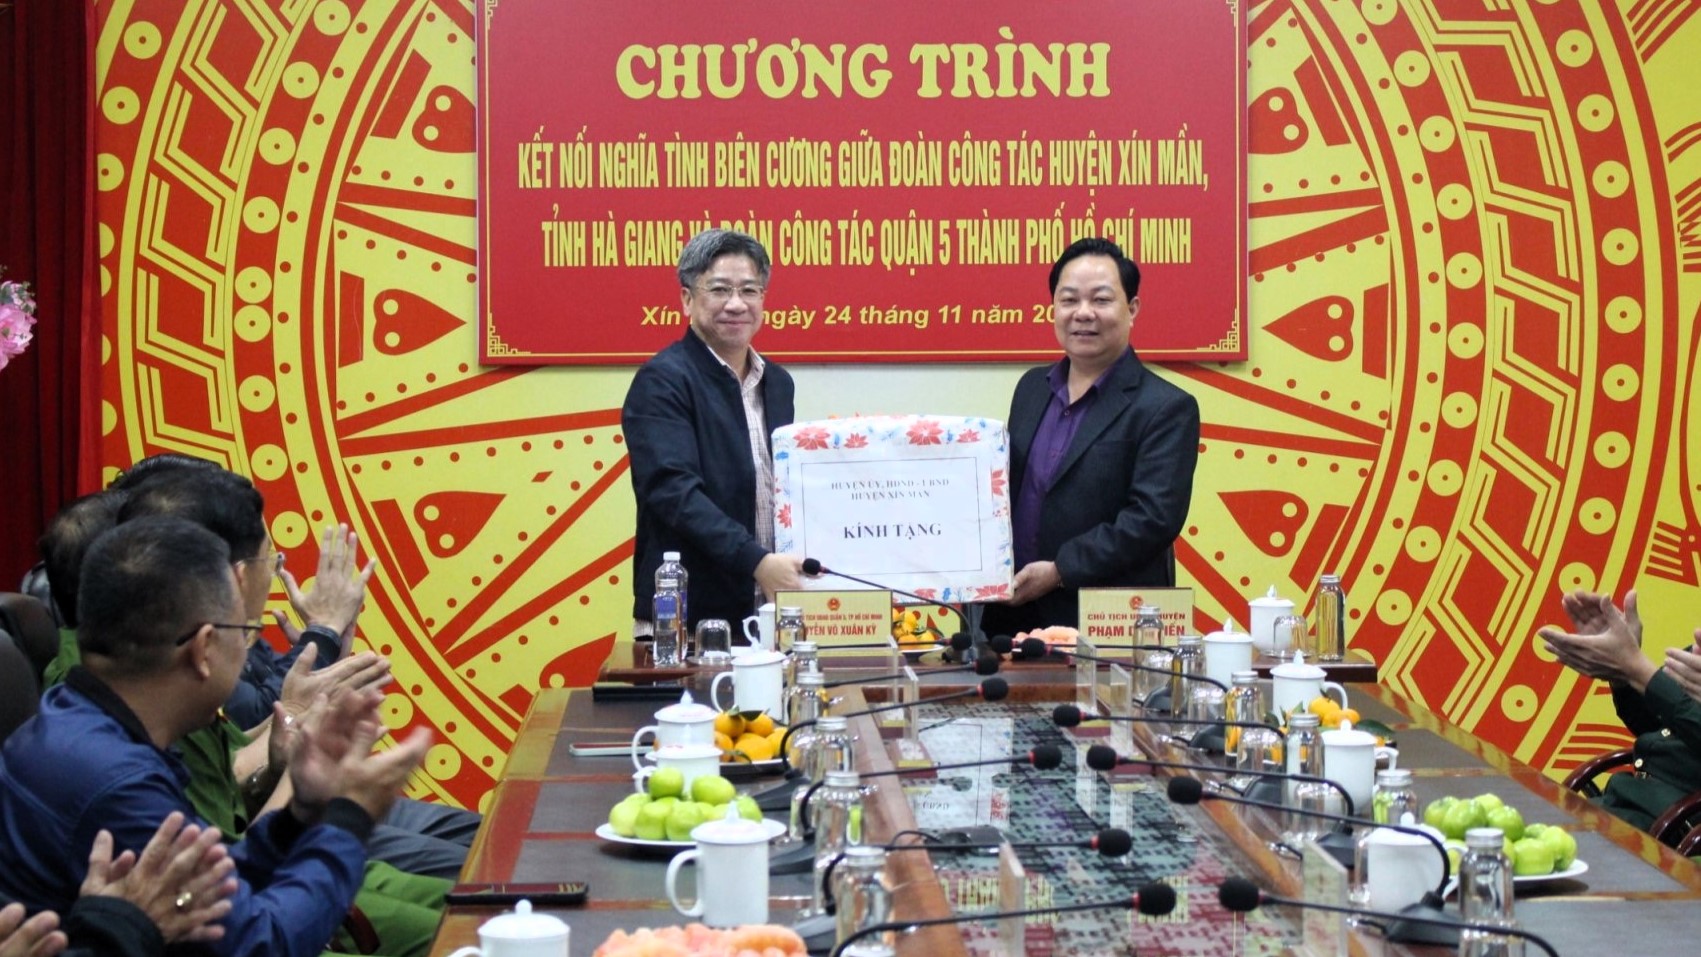 Đoàn công tác Quận 5 (TP. Hồ Chí Minh) thăm, trao đổi kinh nghiệm tại huyện Xín Mần